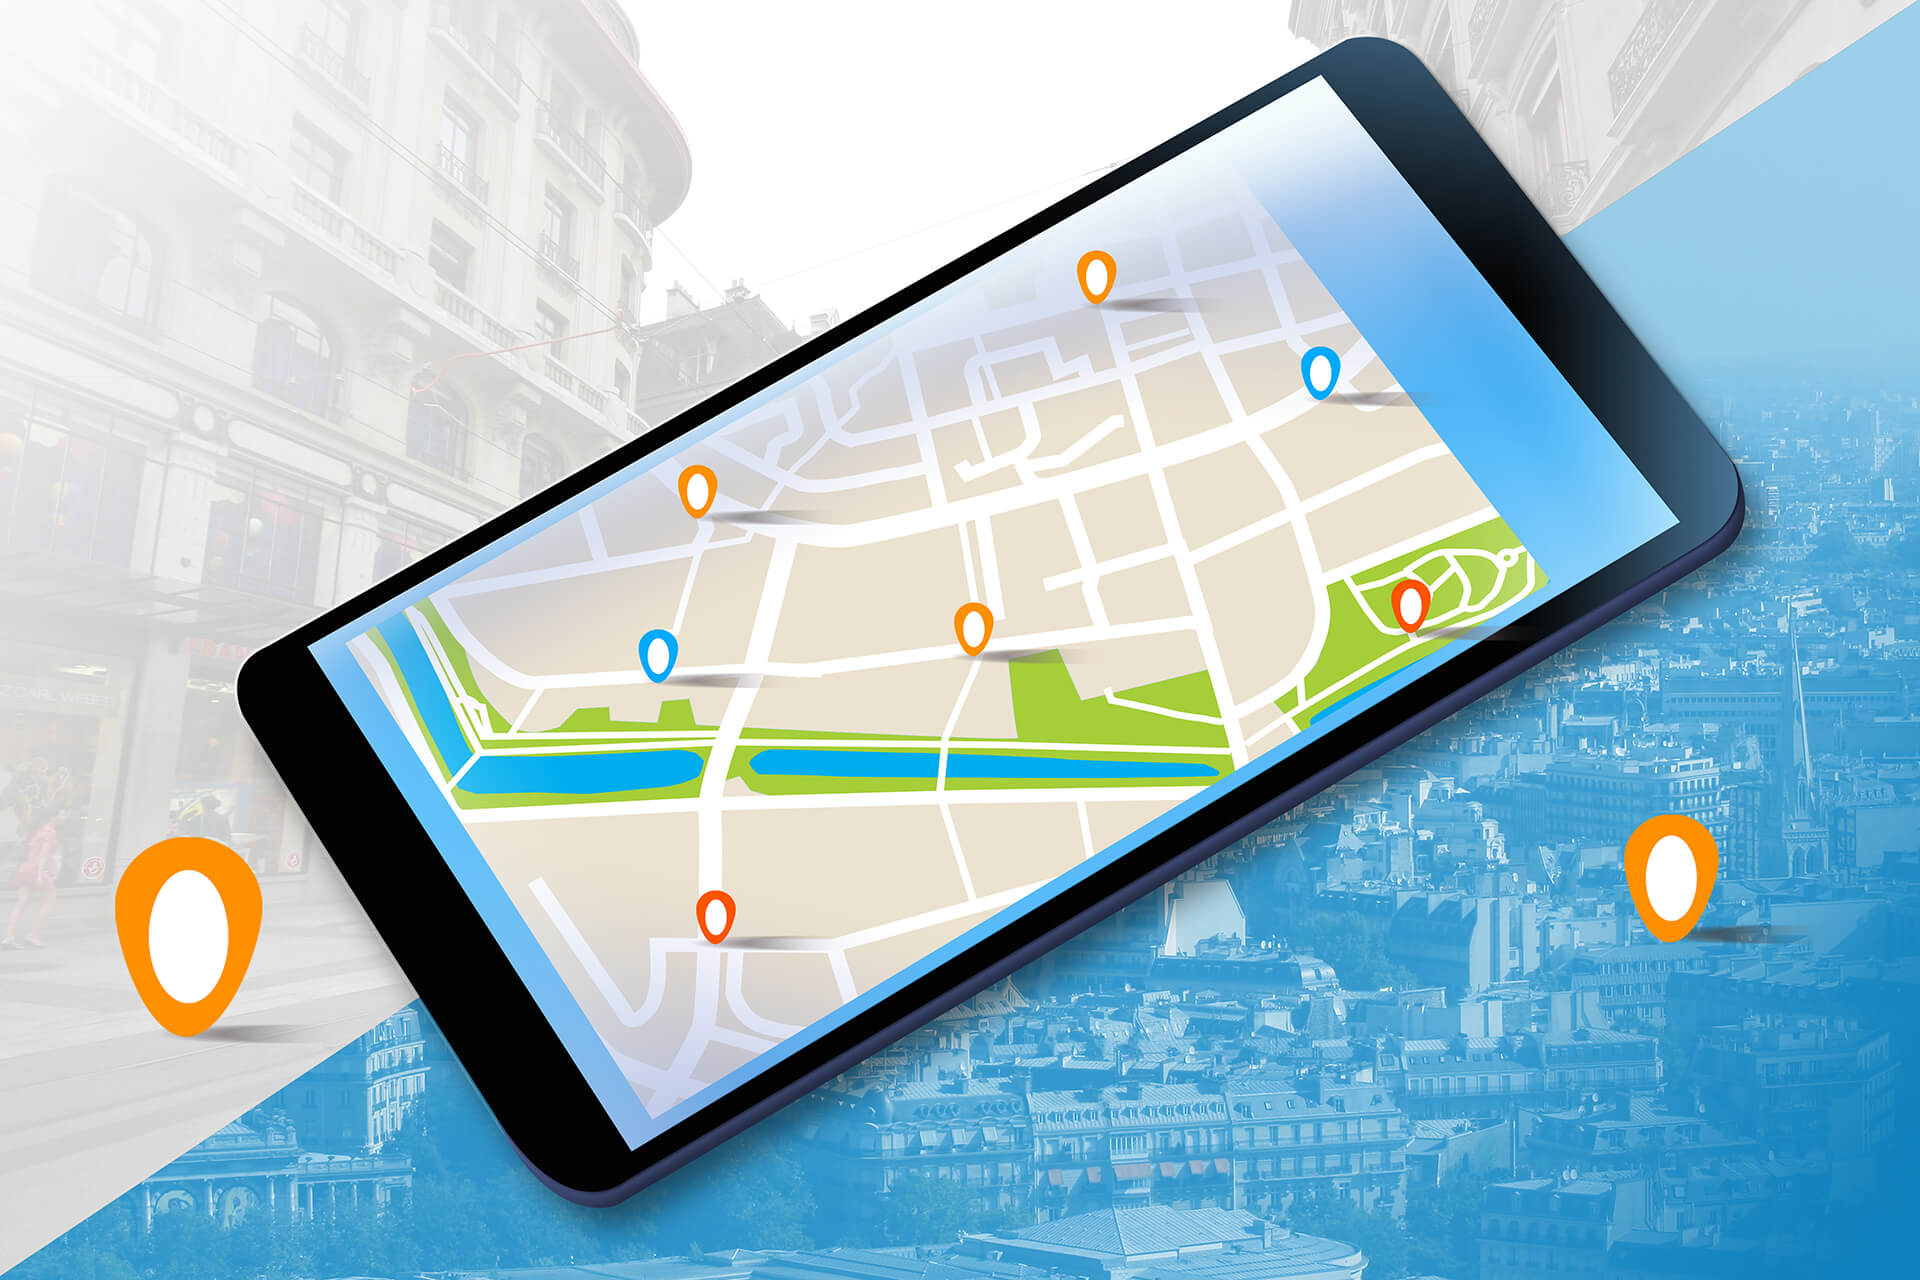 Darstellung einer Karte auf einem Smartphone mit Markern von Unternehmen und Dienstleistern in der Nähe